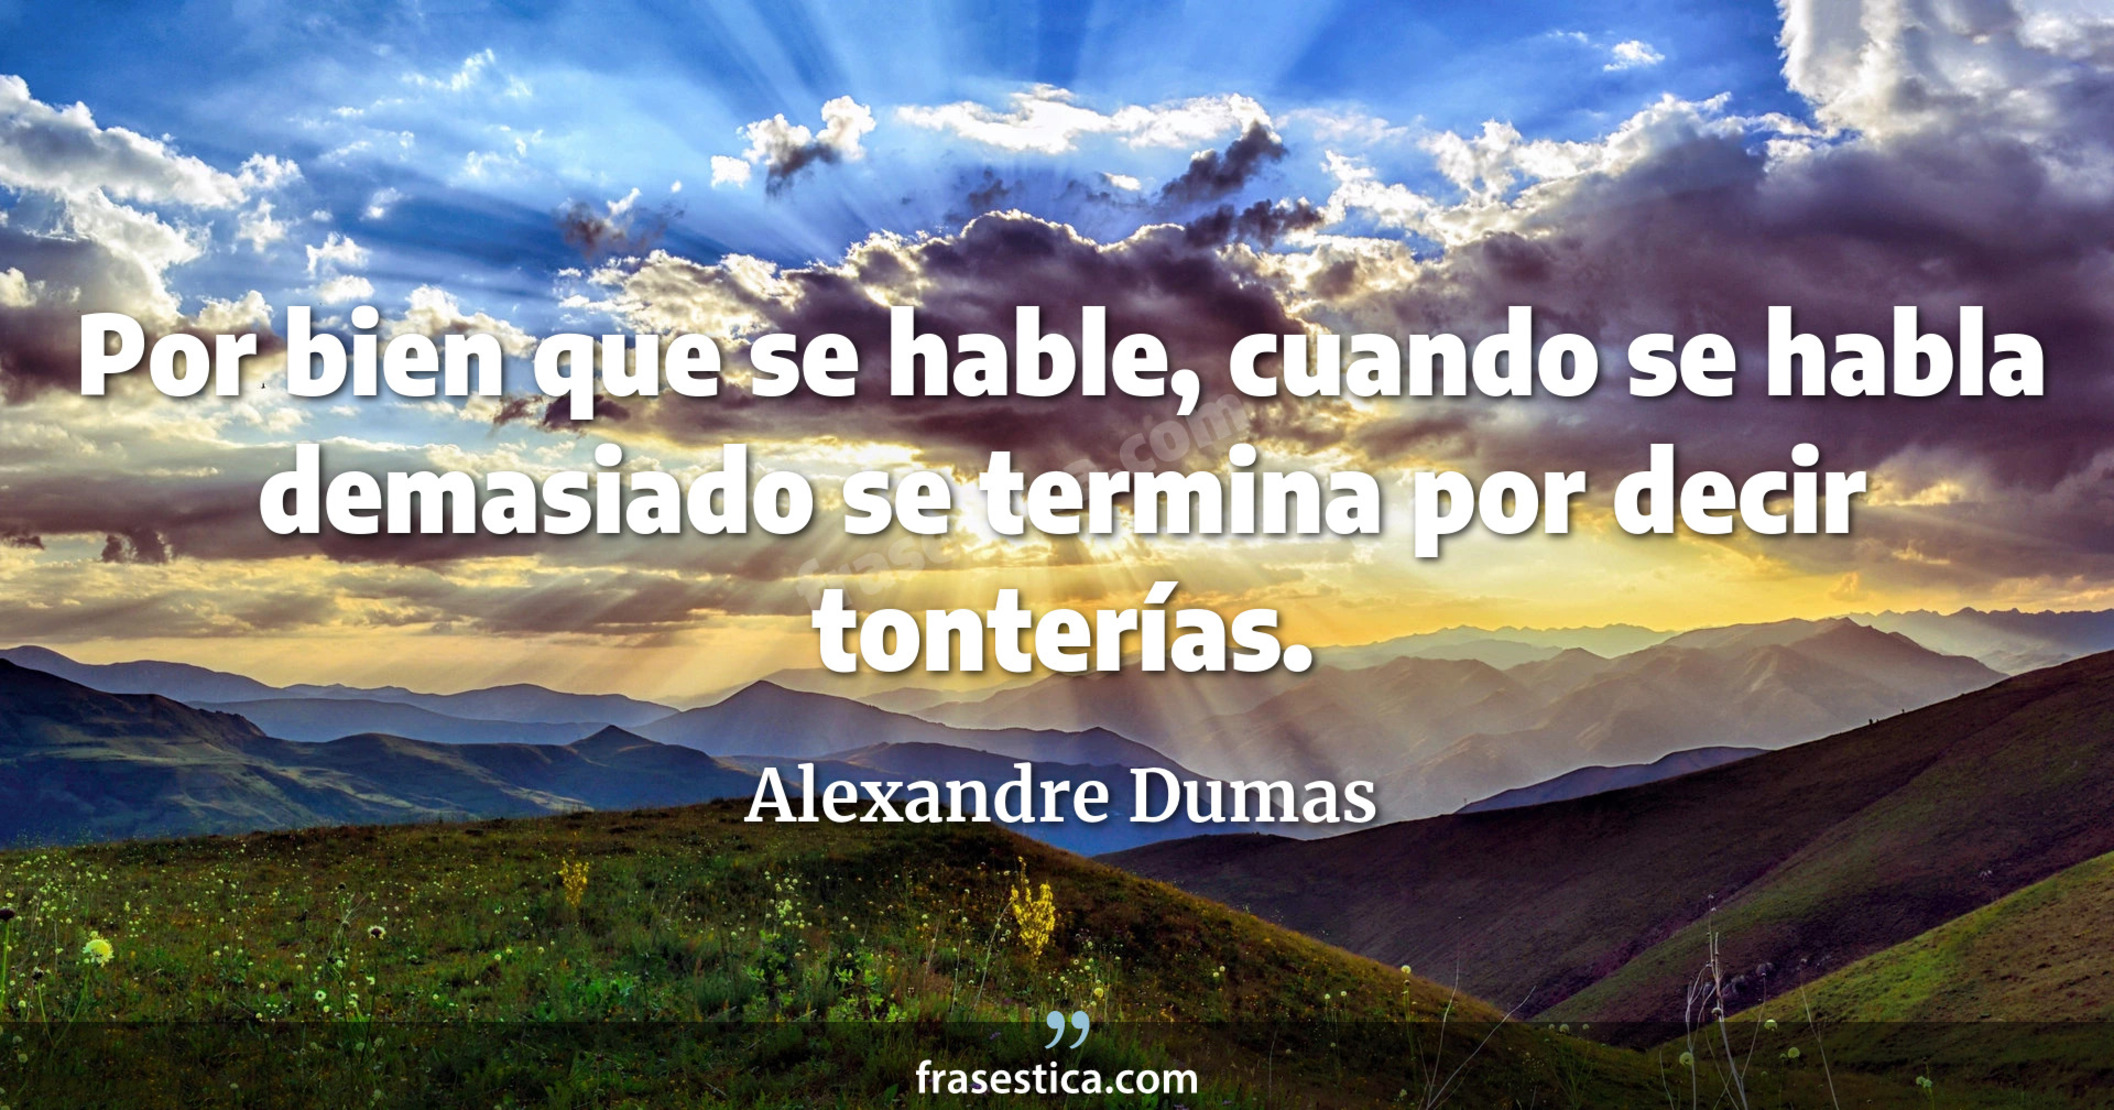 Por bien que se hable, cuando se habla demasiado se termina por decir tonterías. - Alexandre Dumas